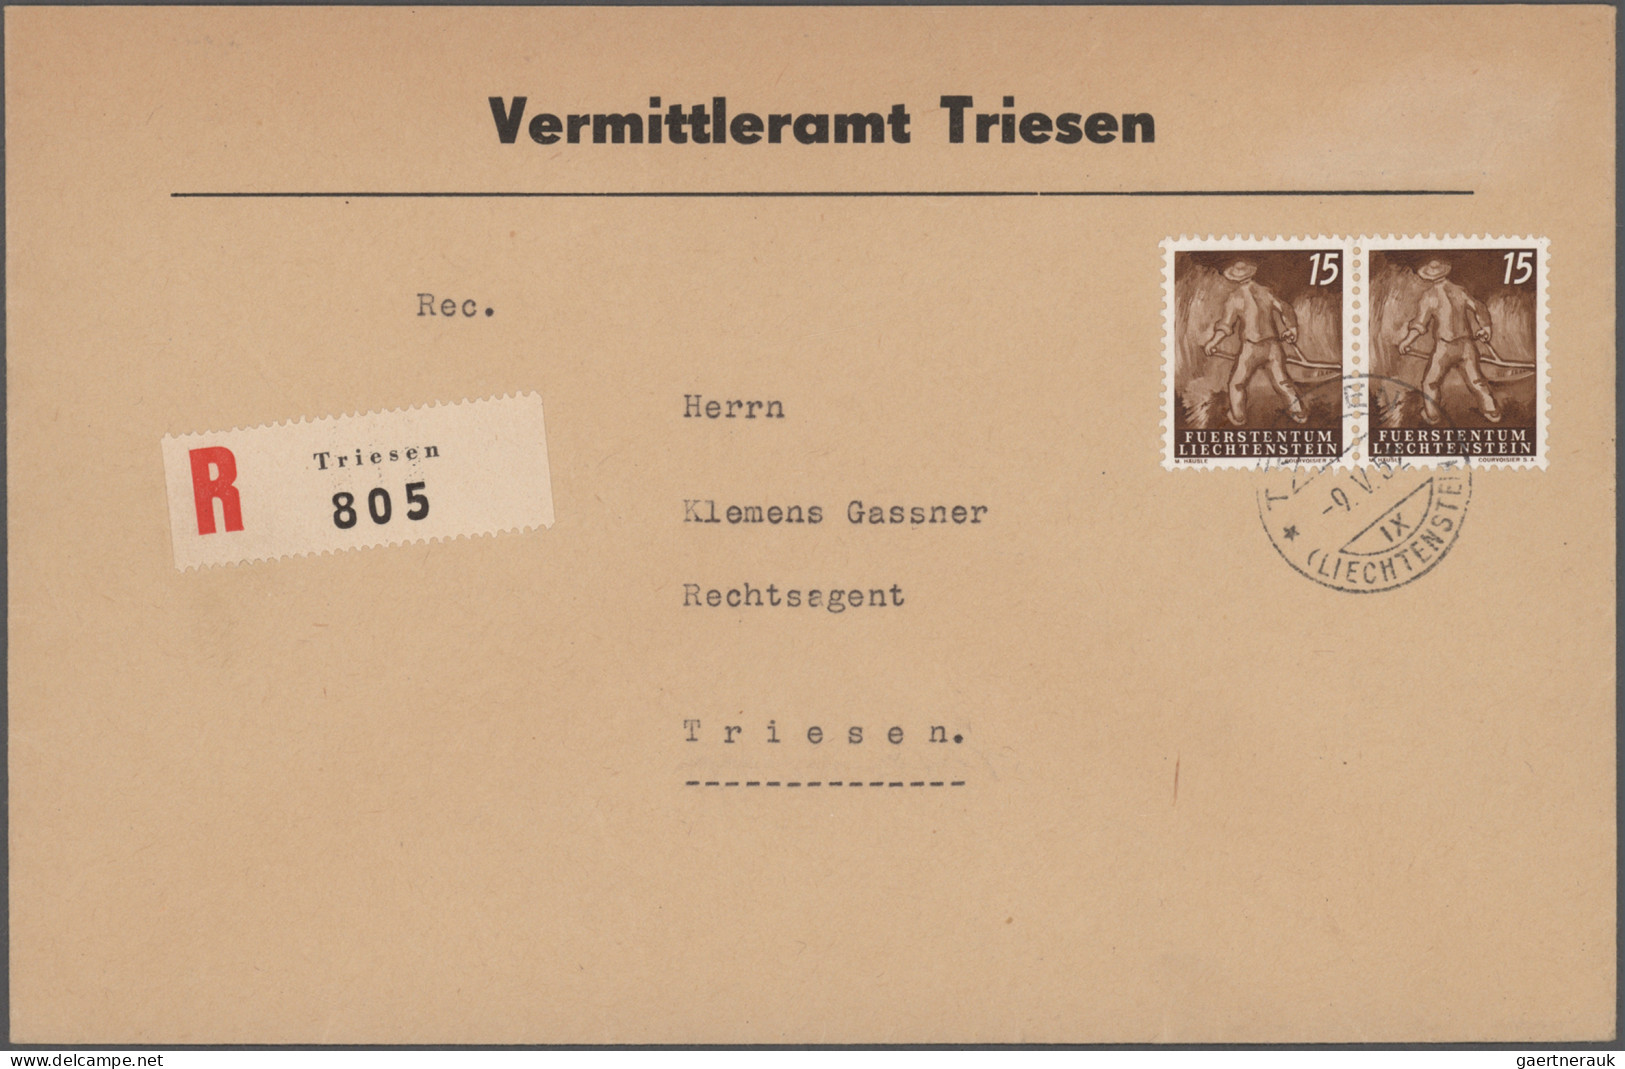 Liechtenstein: 1945/1990, umfangreiche Sammlung bis ca. 1962 mit vielen Briefen